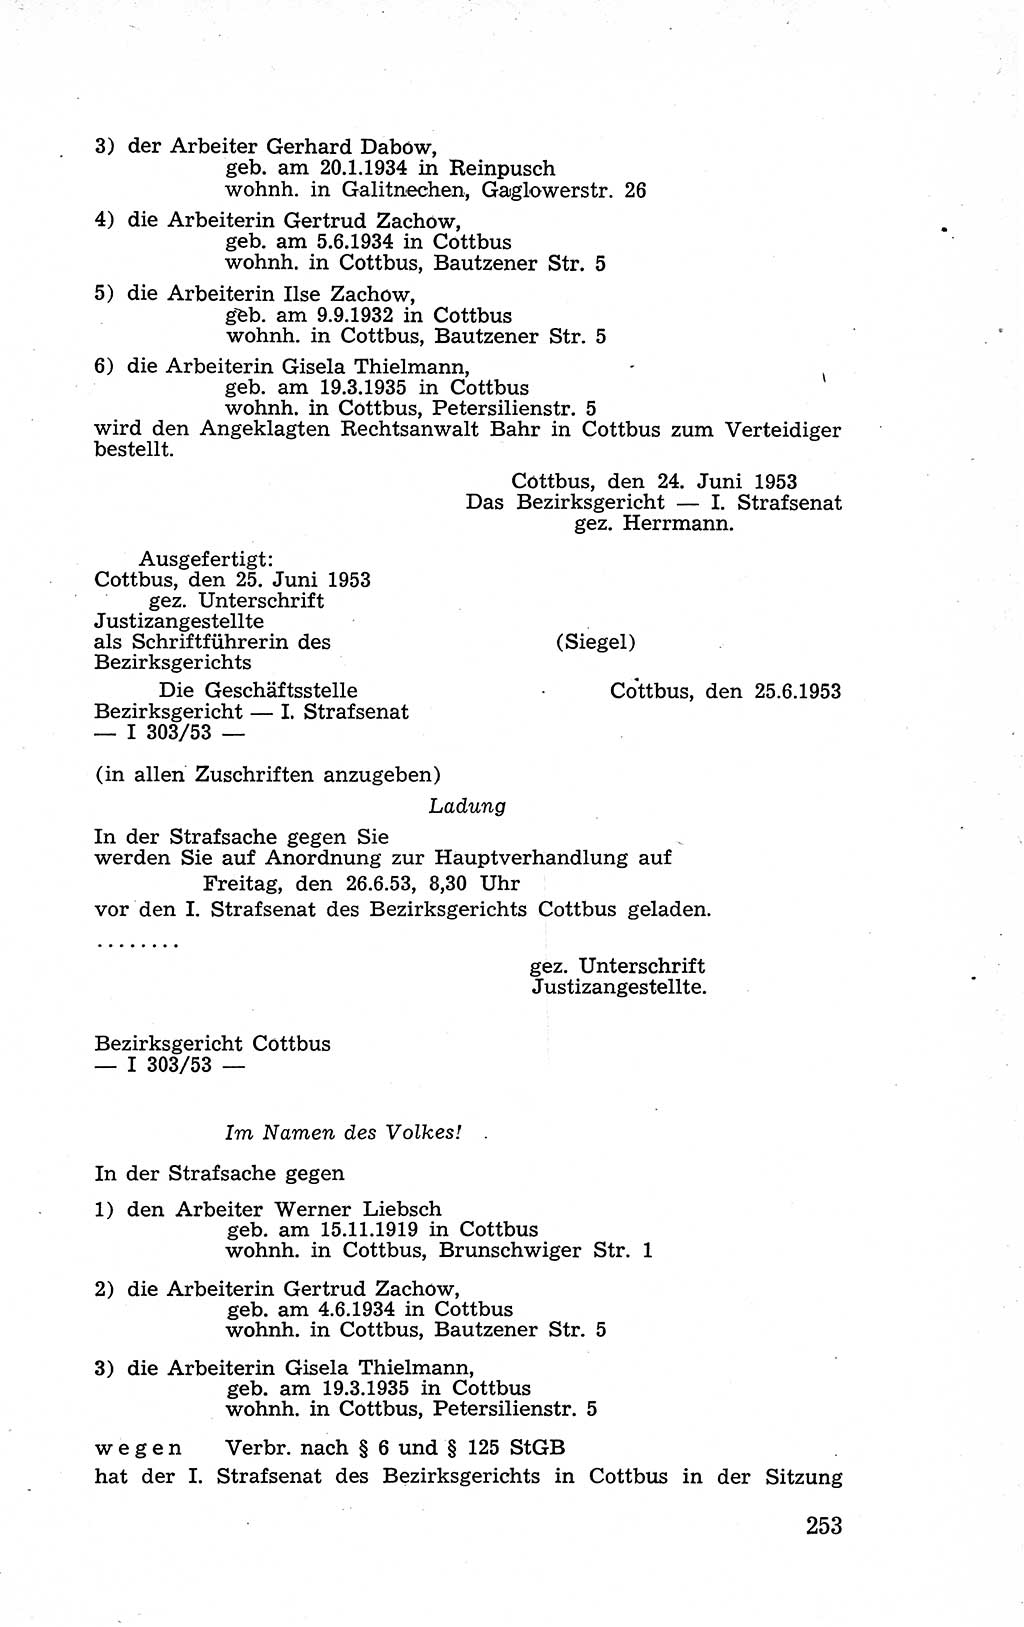 Recht in Fesseln, Dokumente, Internationale Juristen-Kommission [Bundesrepublik Deutschland (BRD)] 1955, Seite 253 (R. Dok. IJK BRD 1955, S. 253)